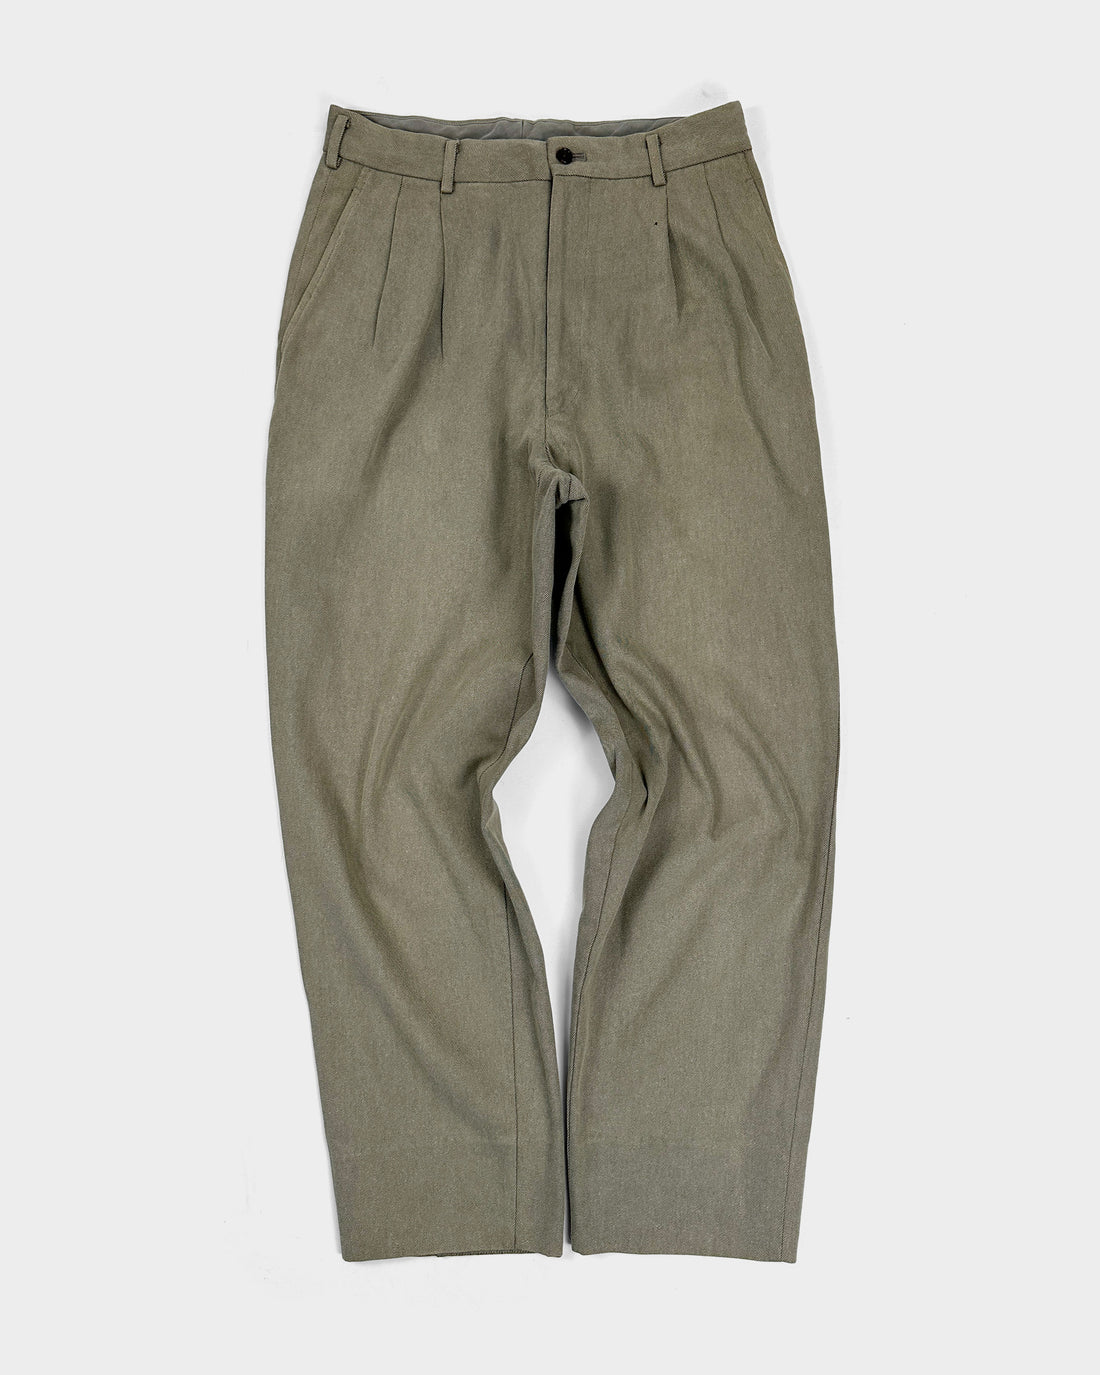 Comme Des Garçons Homme Green High-Waisted Pants 1992